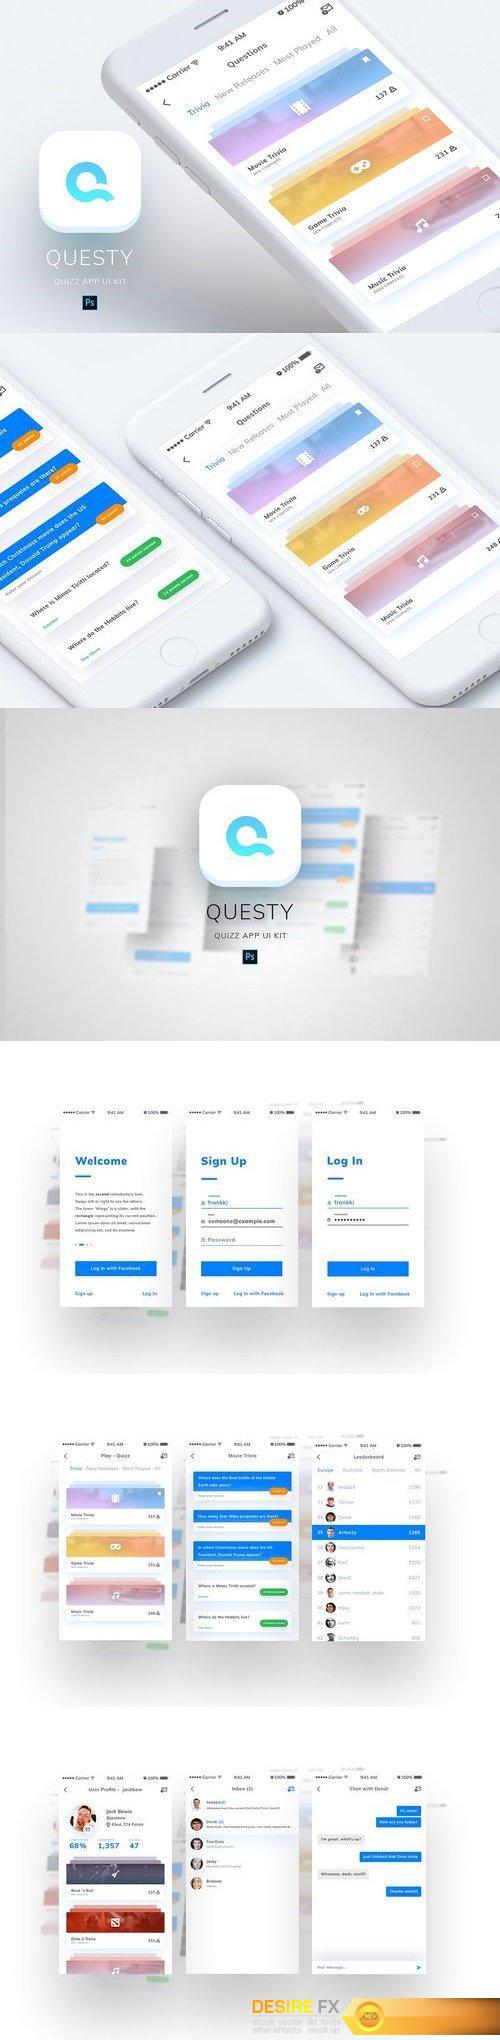 CM - Questy - Quizz Mobile App UI Kit 1916120